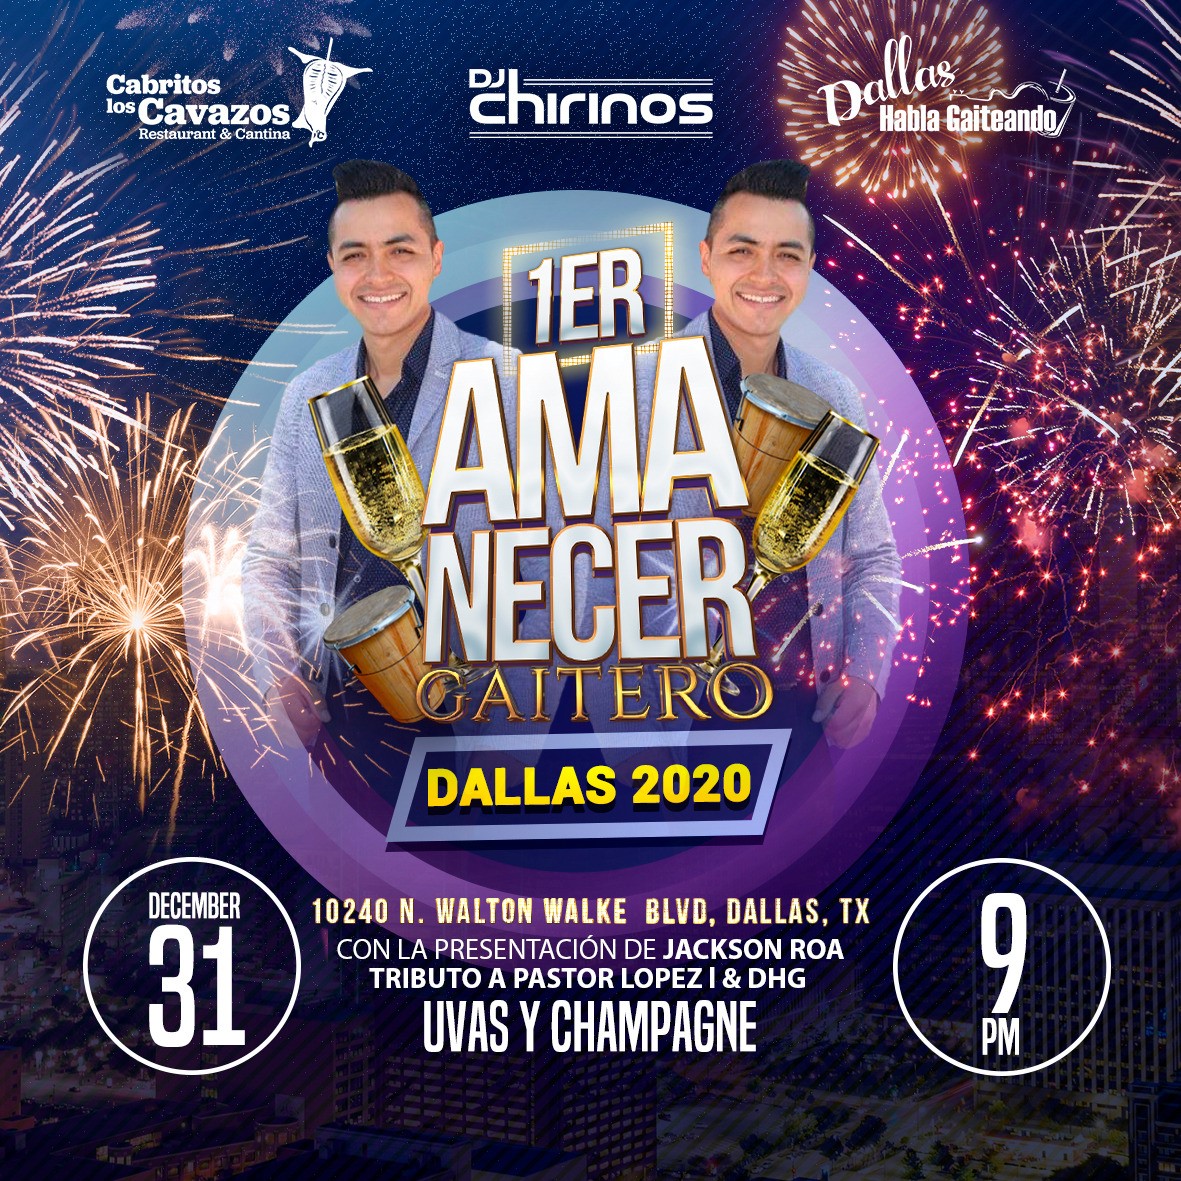 1er Amanecer Gaitero Dallas 2020 Reg 50 Information